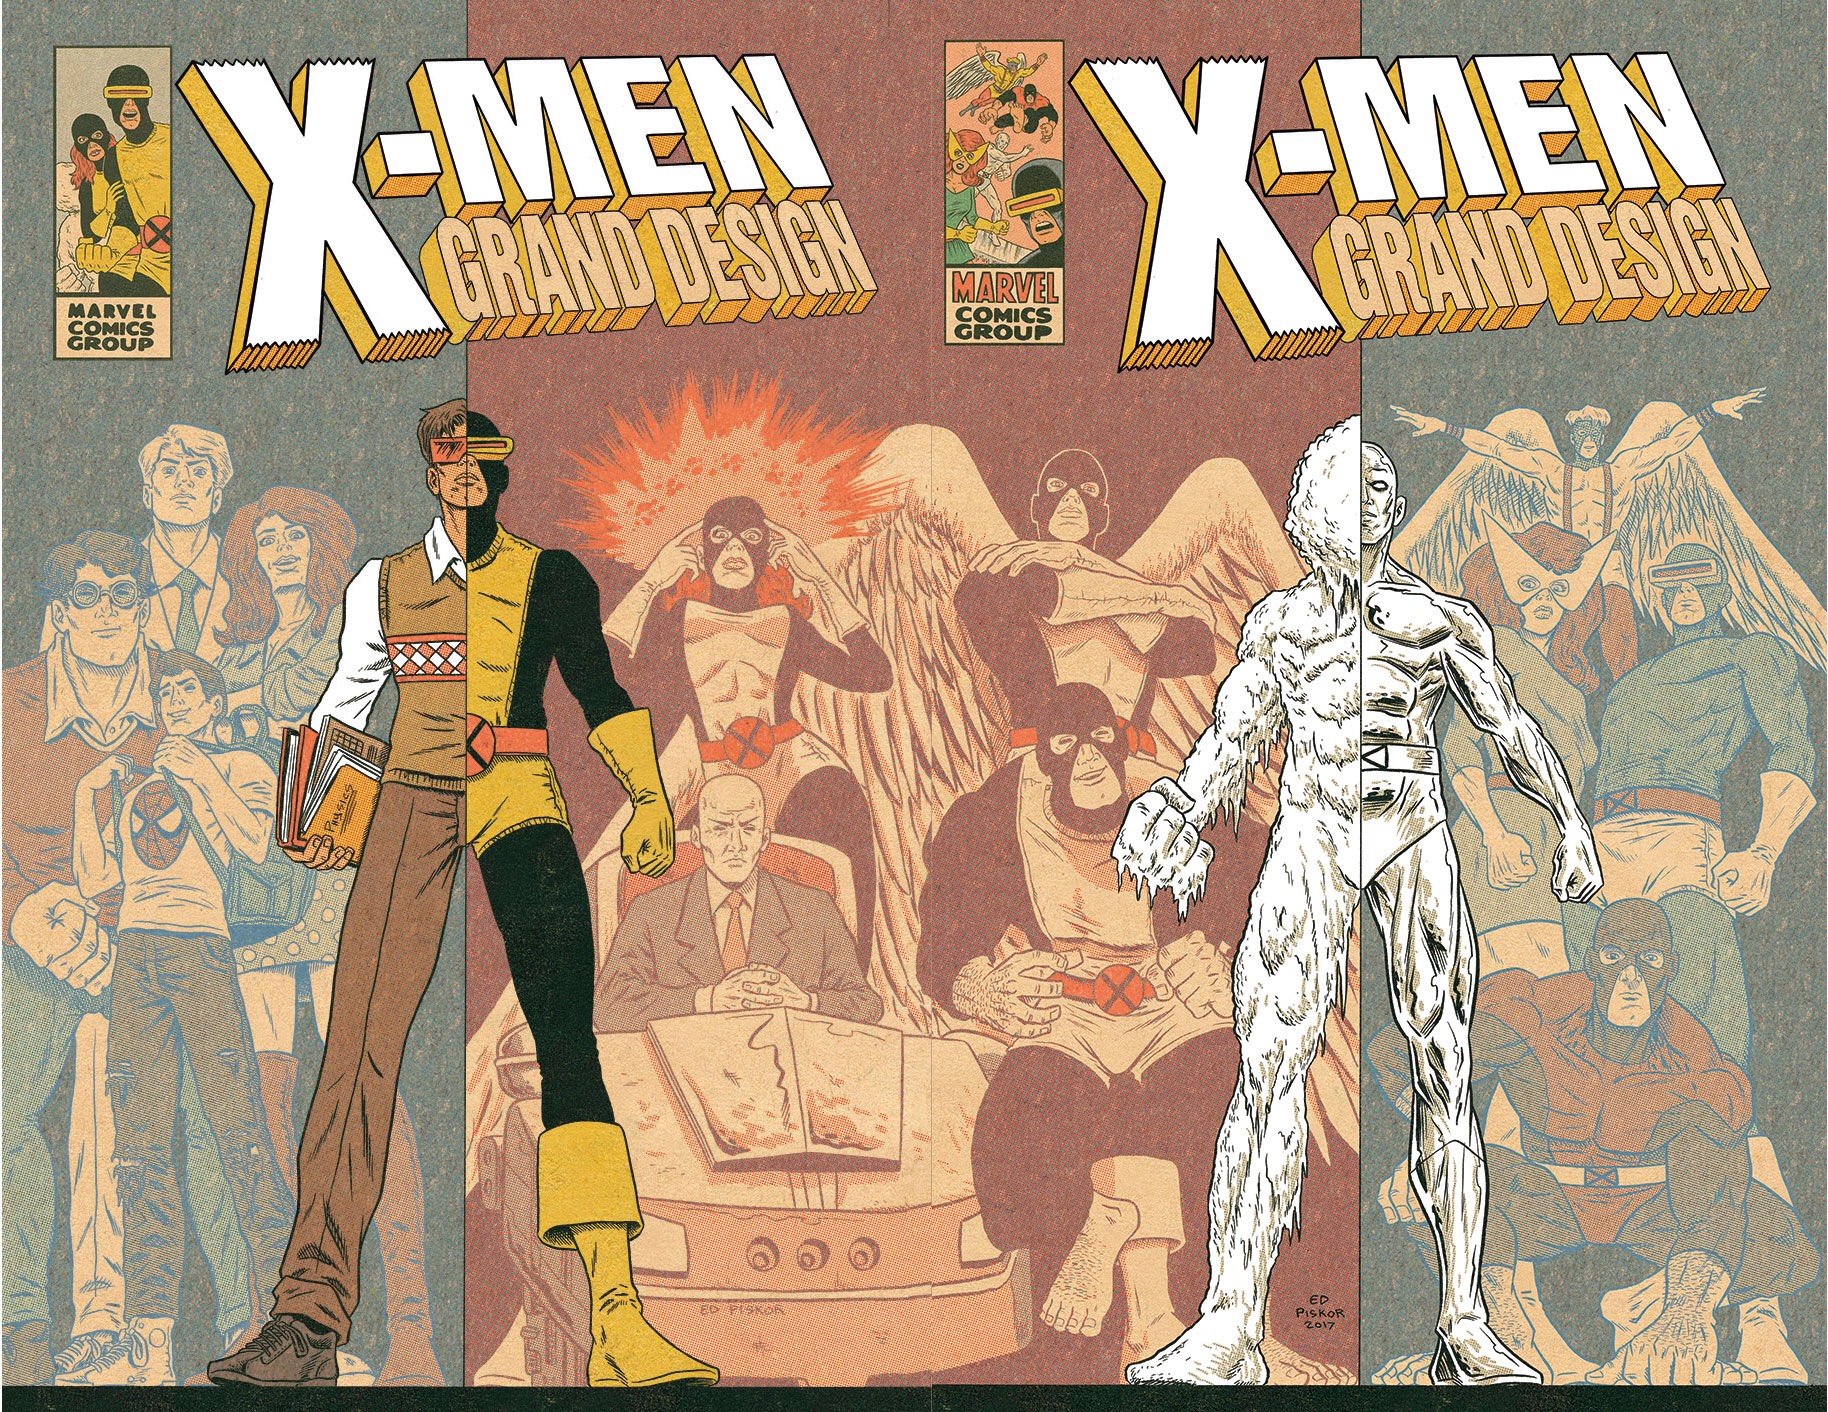 X-Men: Grand Design